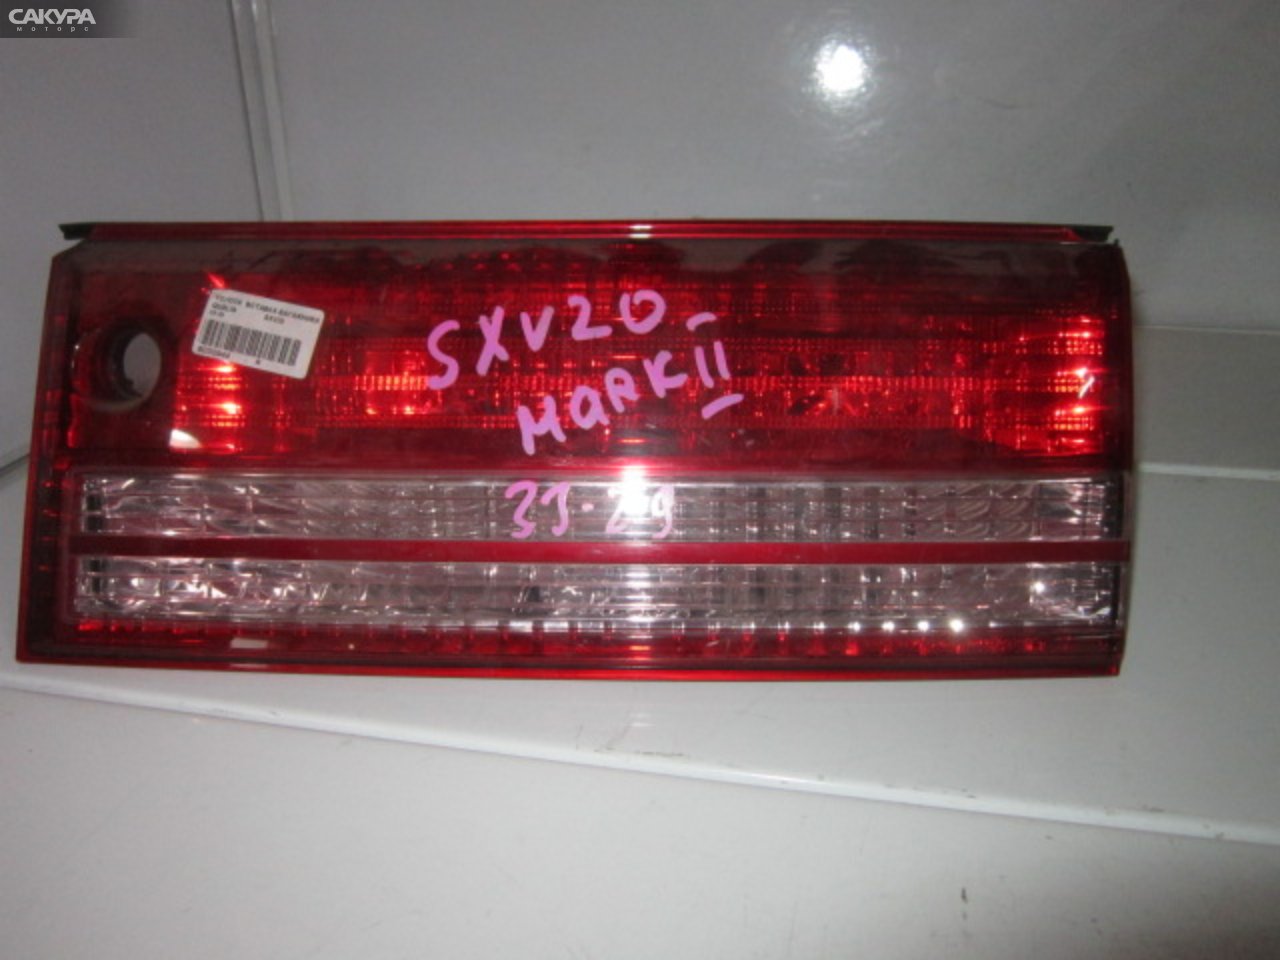 Фонарь вставка багажника правый Toyota Mark II Qualis SXV20W 33-29: купить в Сакура Абакан.